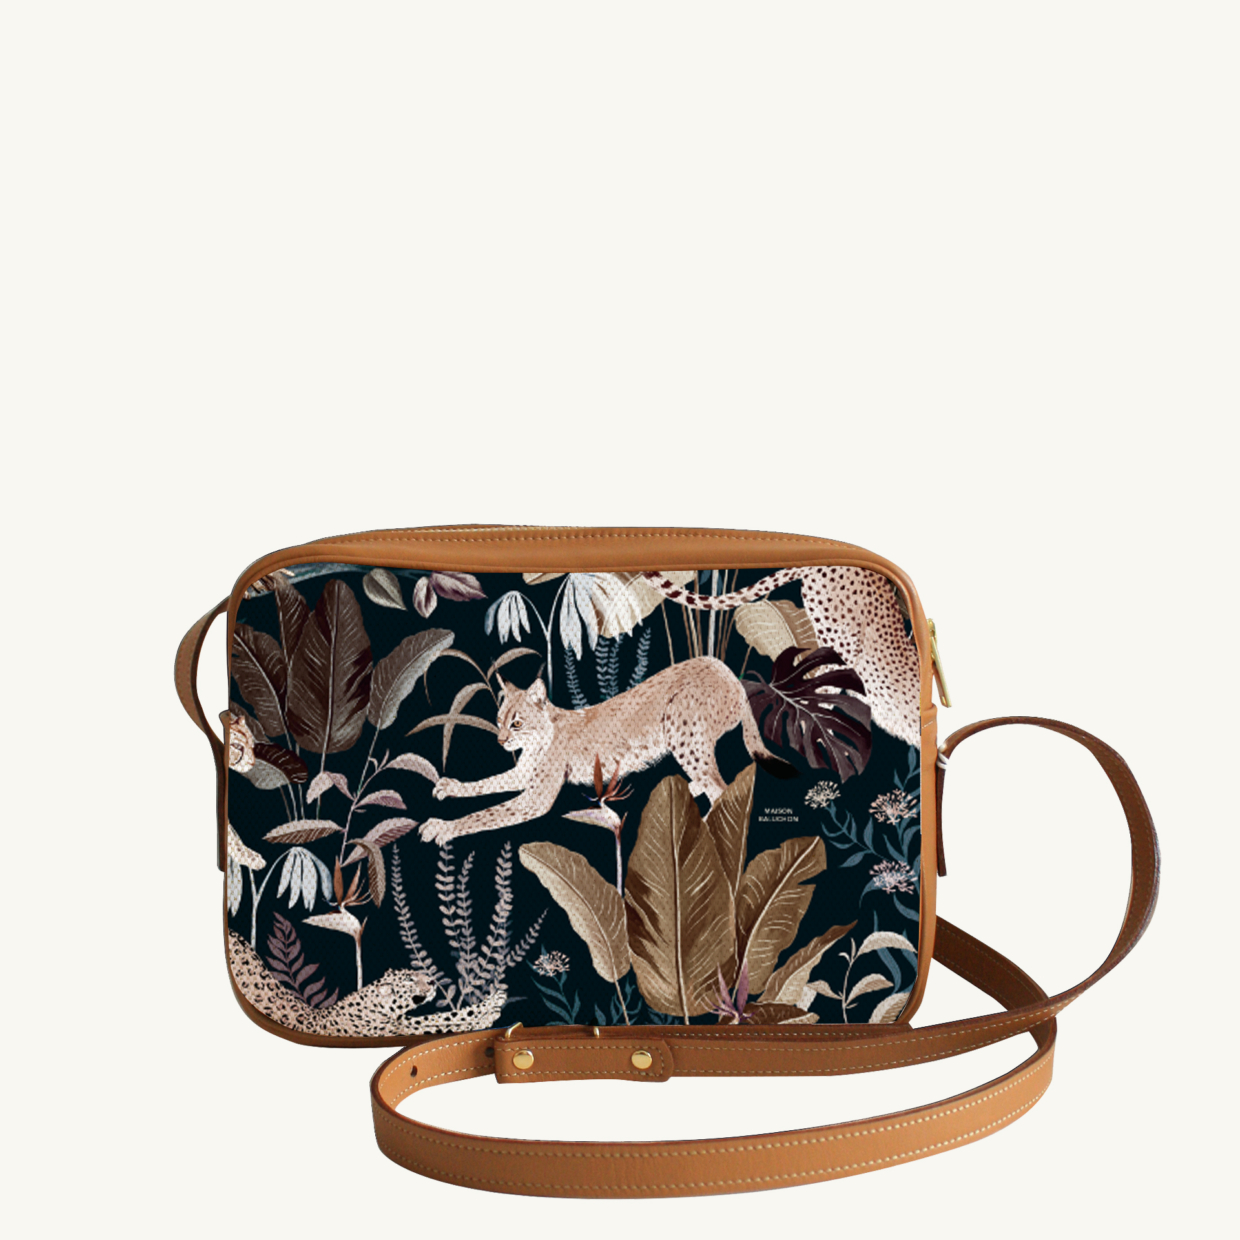 Crossbody bi-material bag Jungle N°22 - Camel leather